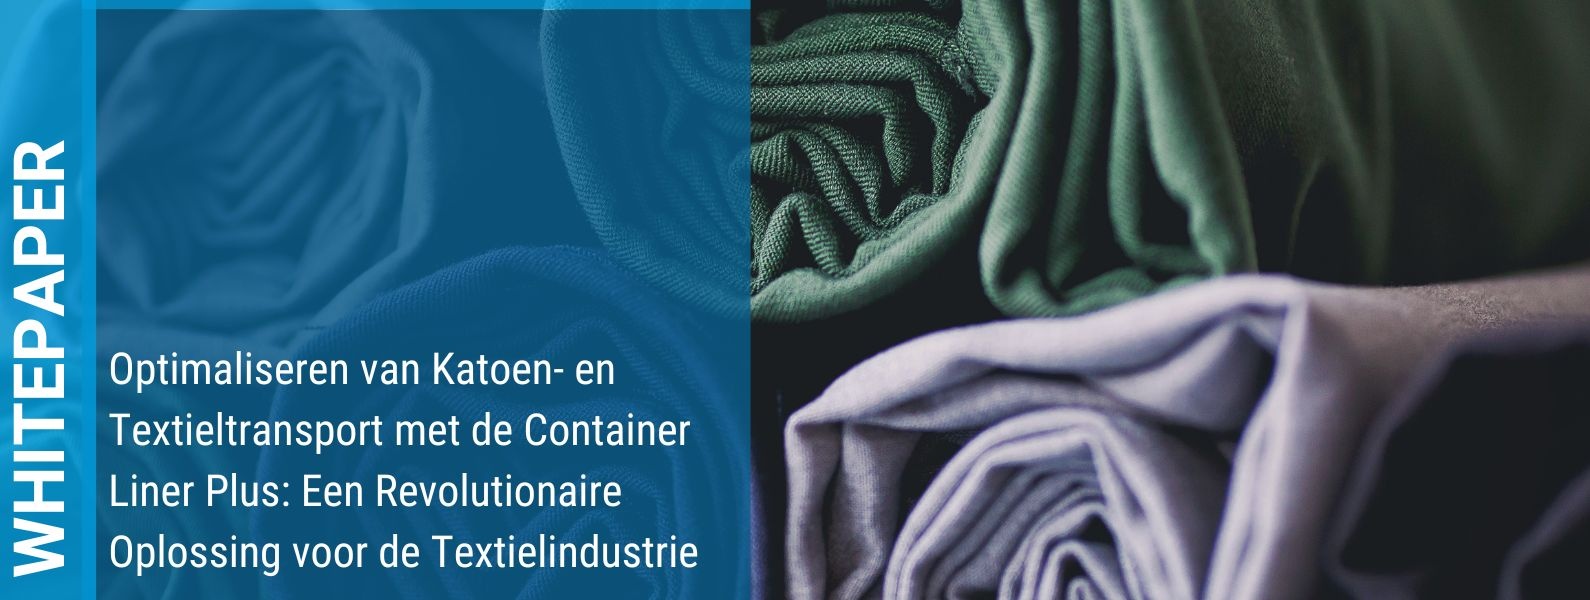 Whitepaper - Optimaliseren van Katoen- en Textieltransport met de Container Liner Plus: Een Revolutionaire Oplossing voor de Textielindustrie